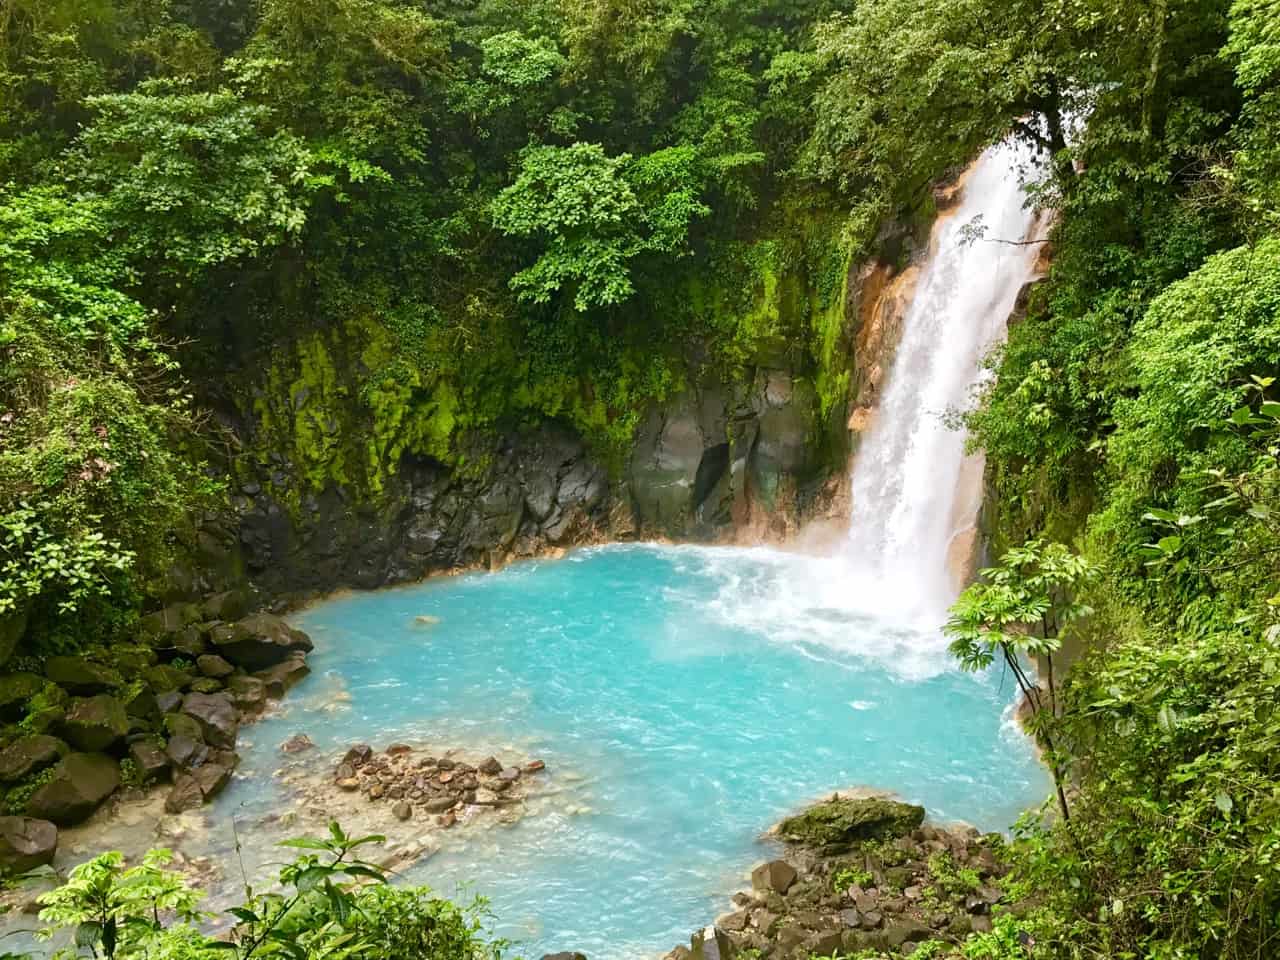 Rio Celesten vesiputous syöksyy maitomaisen siniseen altaaseen Tenorion tulivuoren kansallispuistossa, joka on yksi Costa Rican vähemmän vierailluista puistoista.